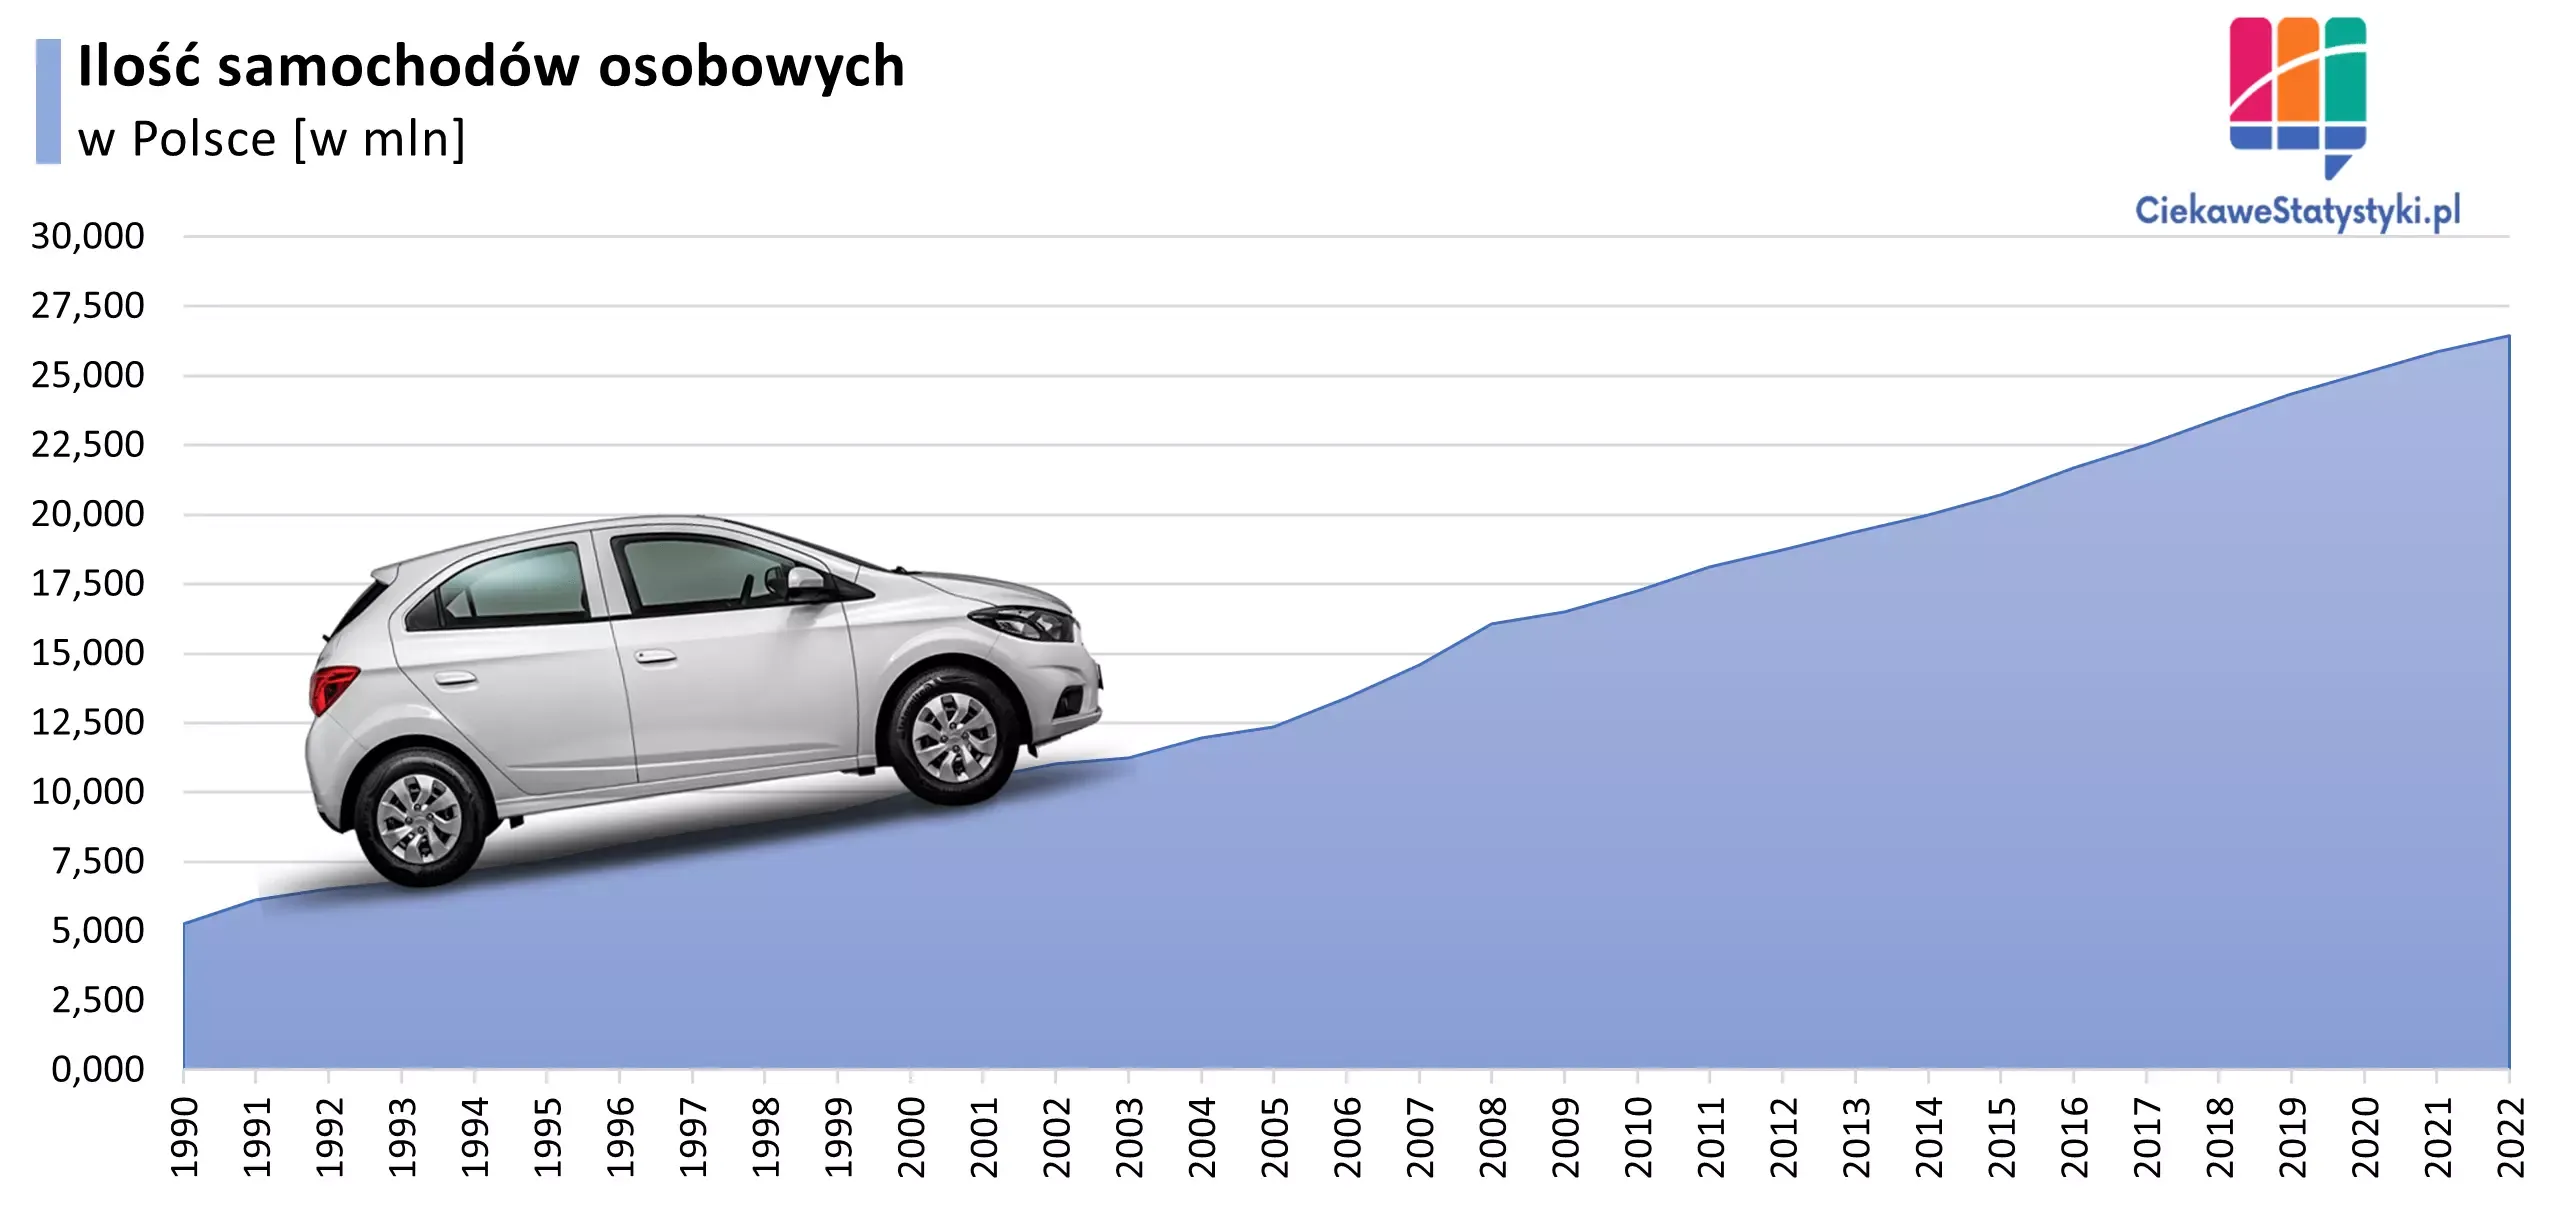 Wykres przedstawia liczbę samochodów osobowych w Polsce na przestrzeni lat